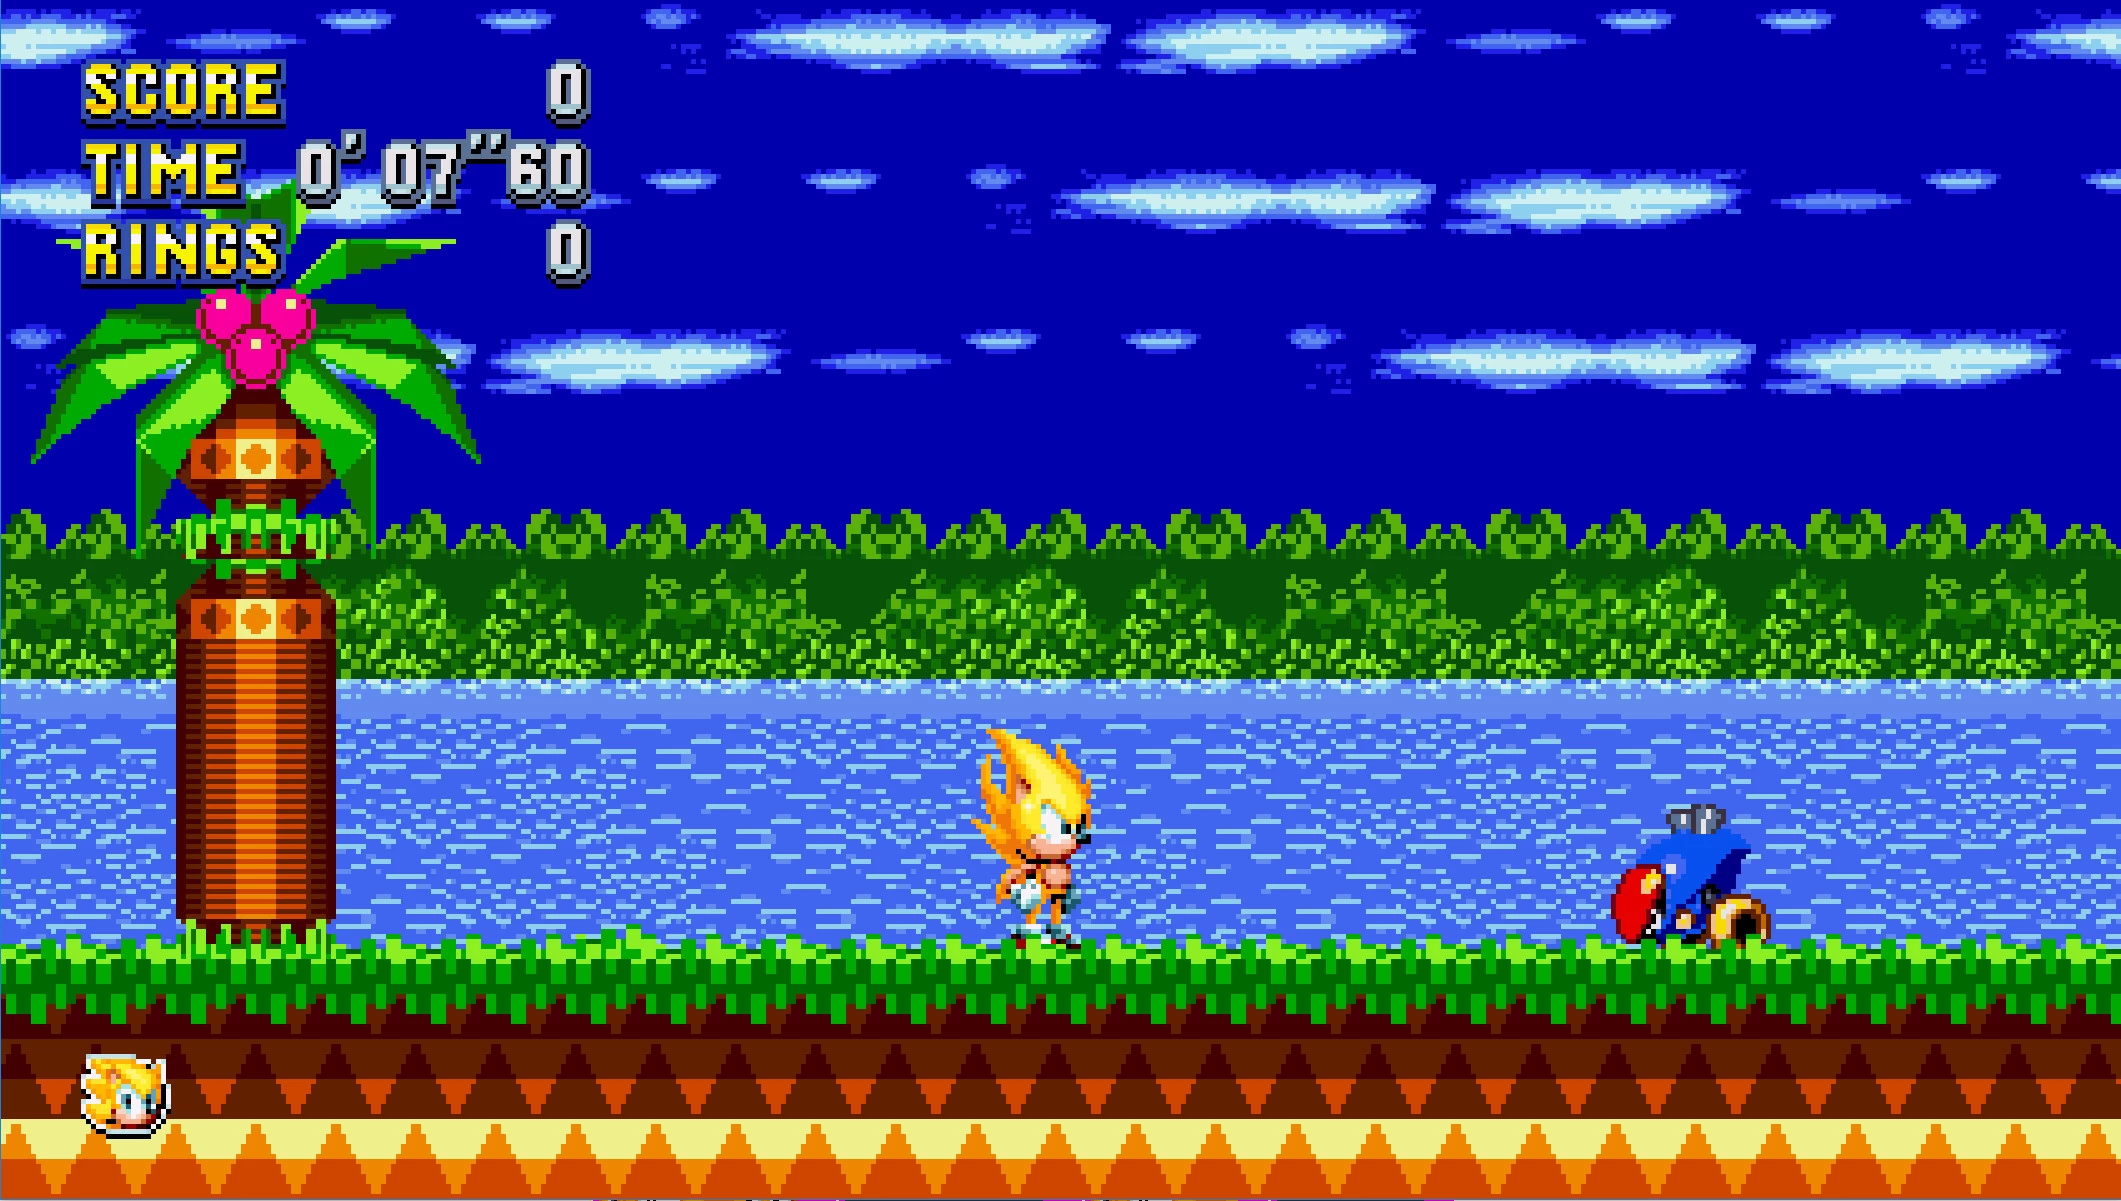 Sonic Mania: Super Plus Hyper Edition, Sonic Mania PLUS Mods ❄ Gameplay